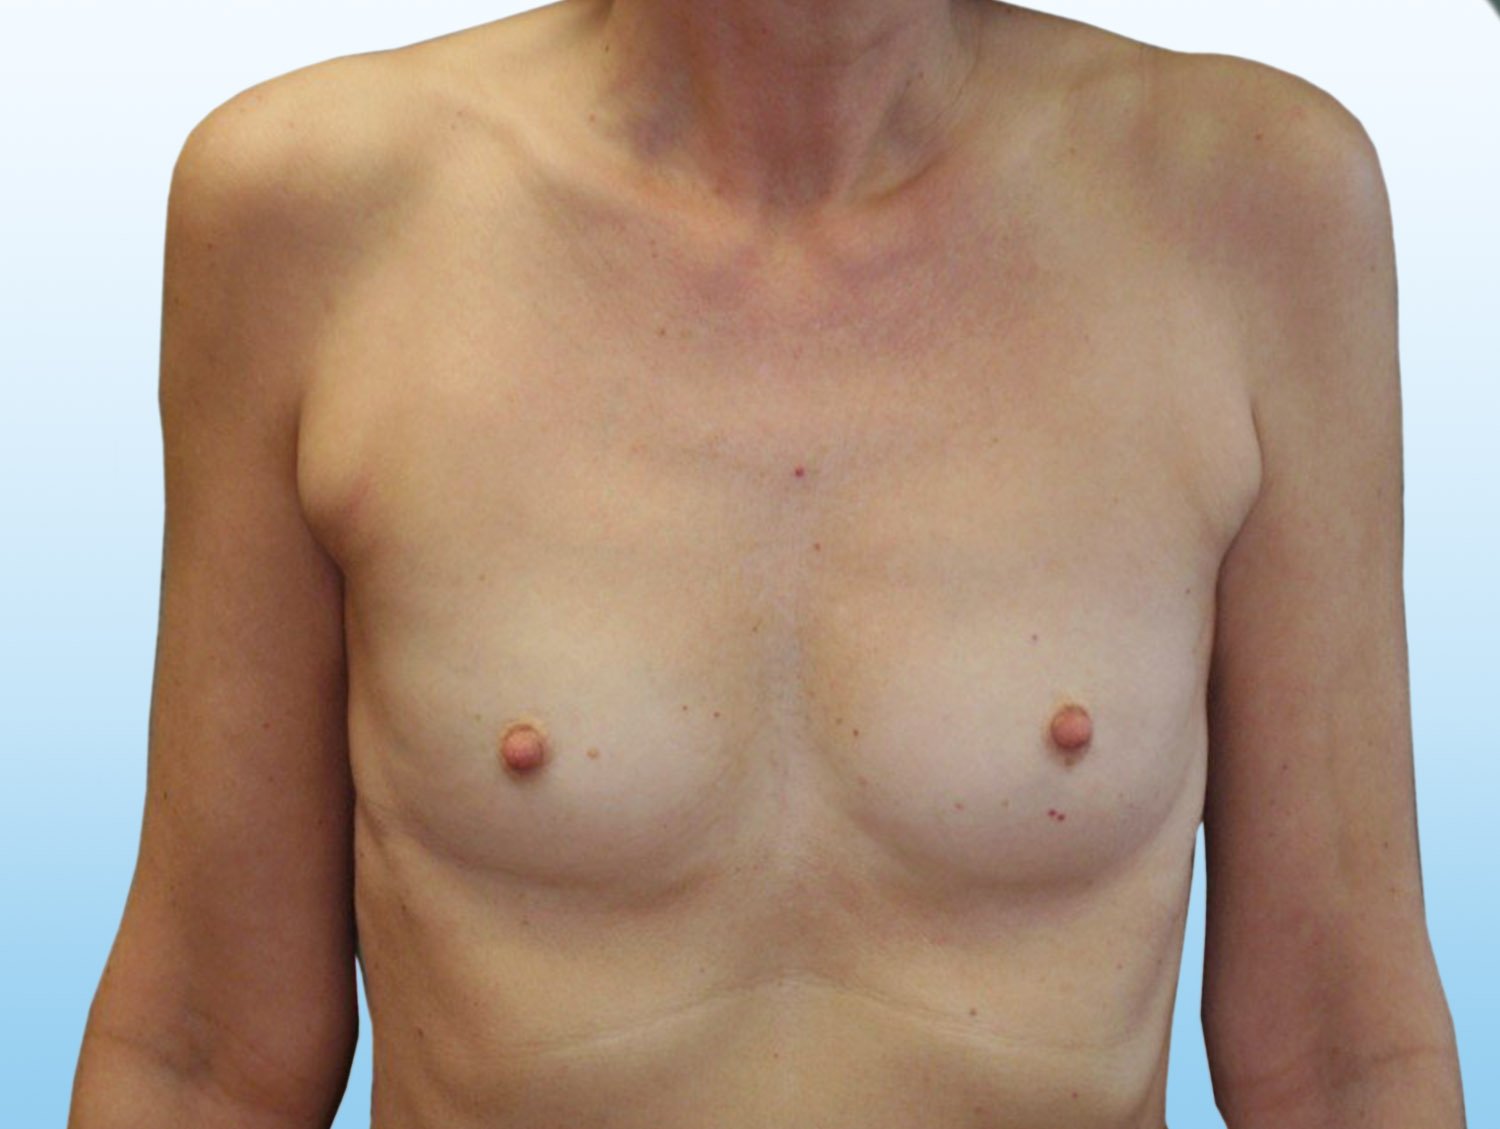 Výsledek zvětšení prsou pomocí augmentace - před zákrokem